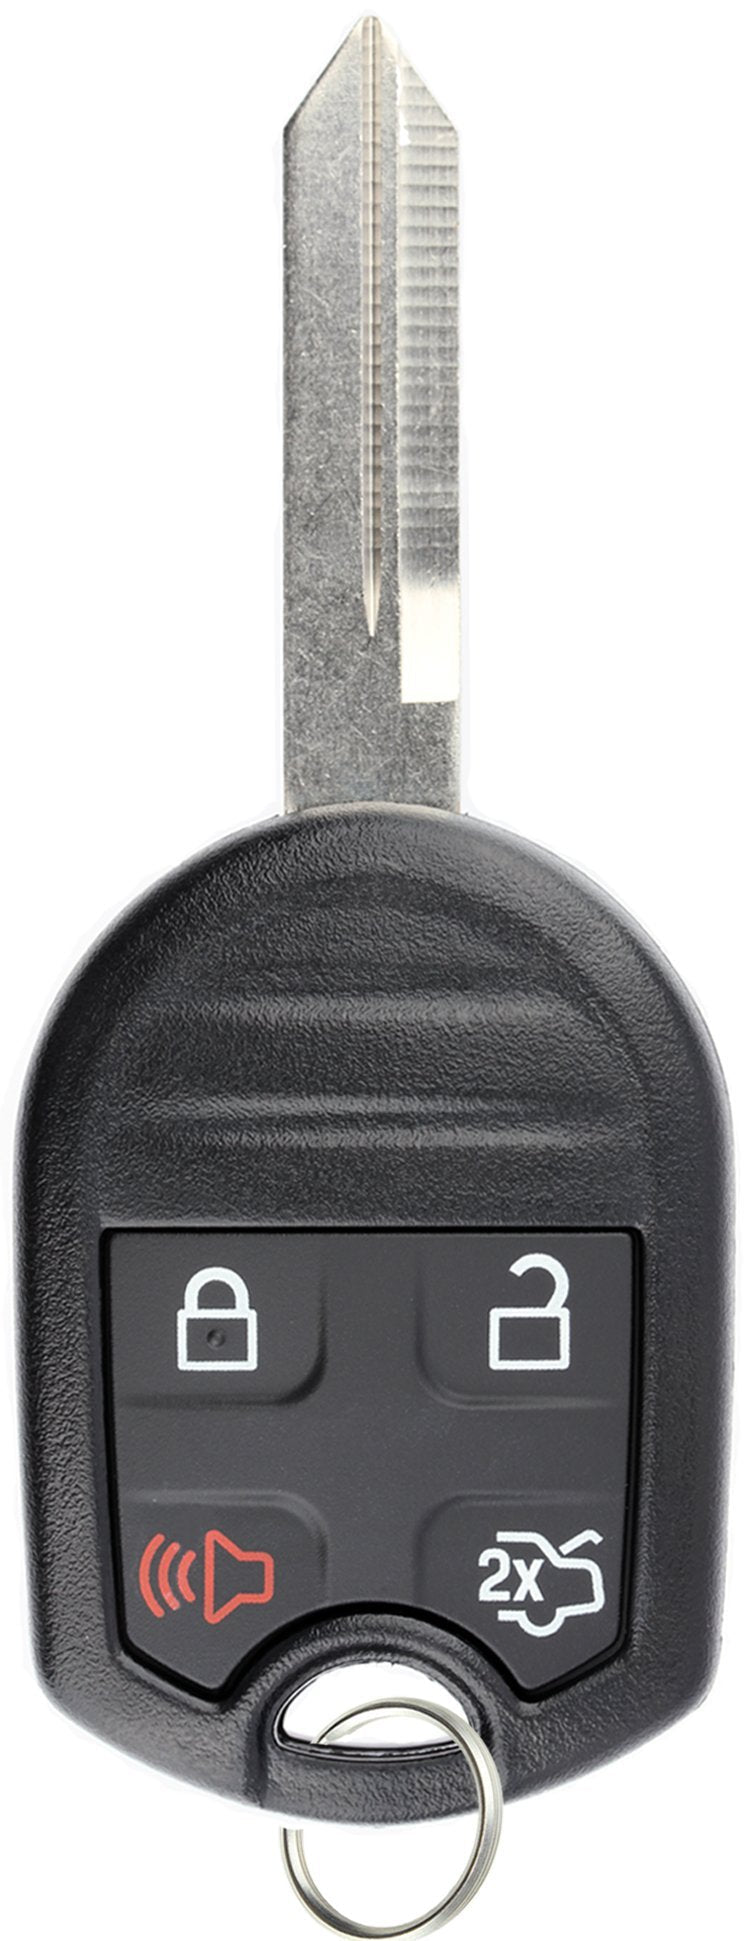  [AUSTRALIA] - KeylessOption Keyless Entry Remote Control Fob Uncut Blank Ignition Car Key Replacement for CWTWB1U793